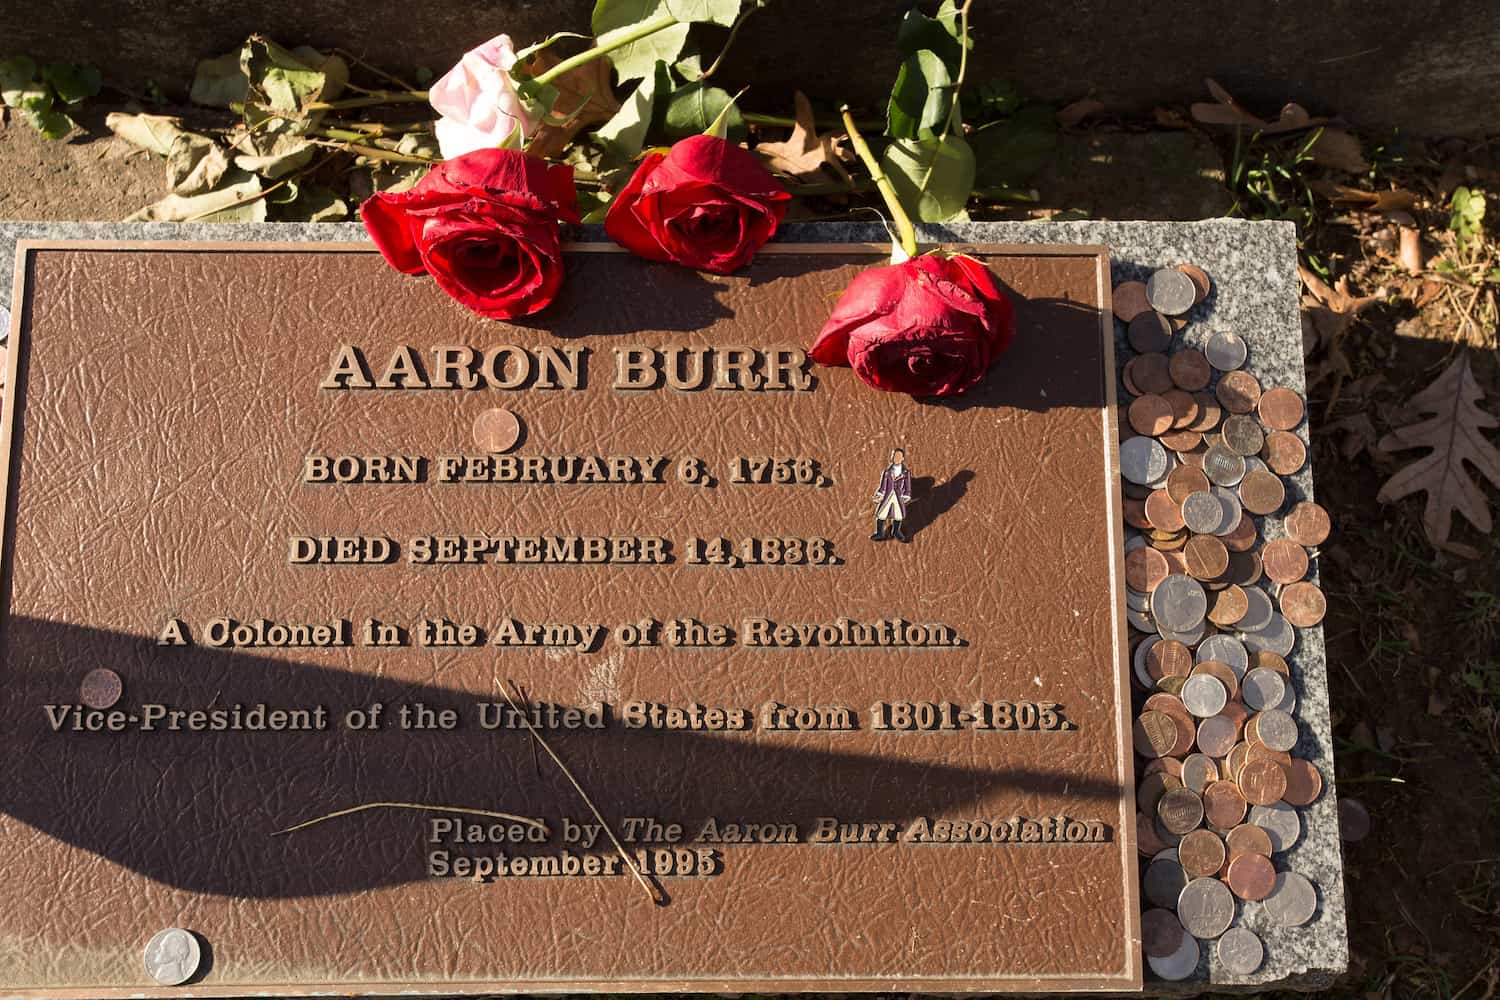 Aaron Burr's grave